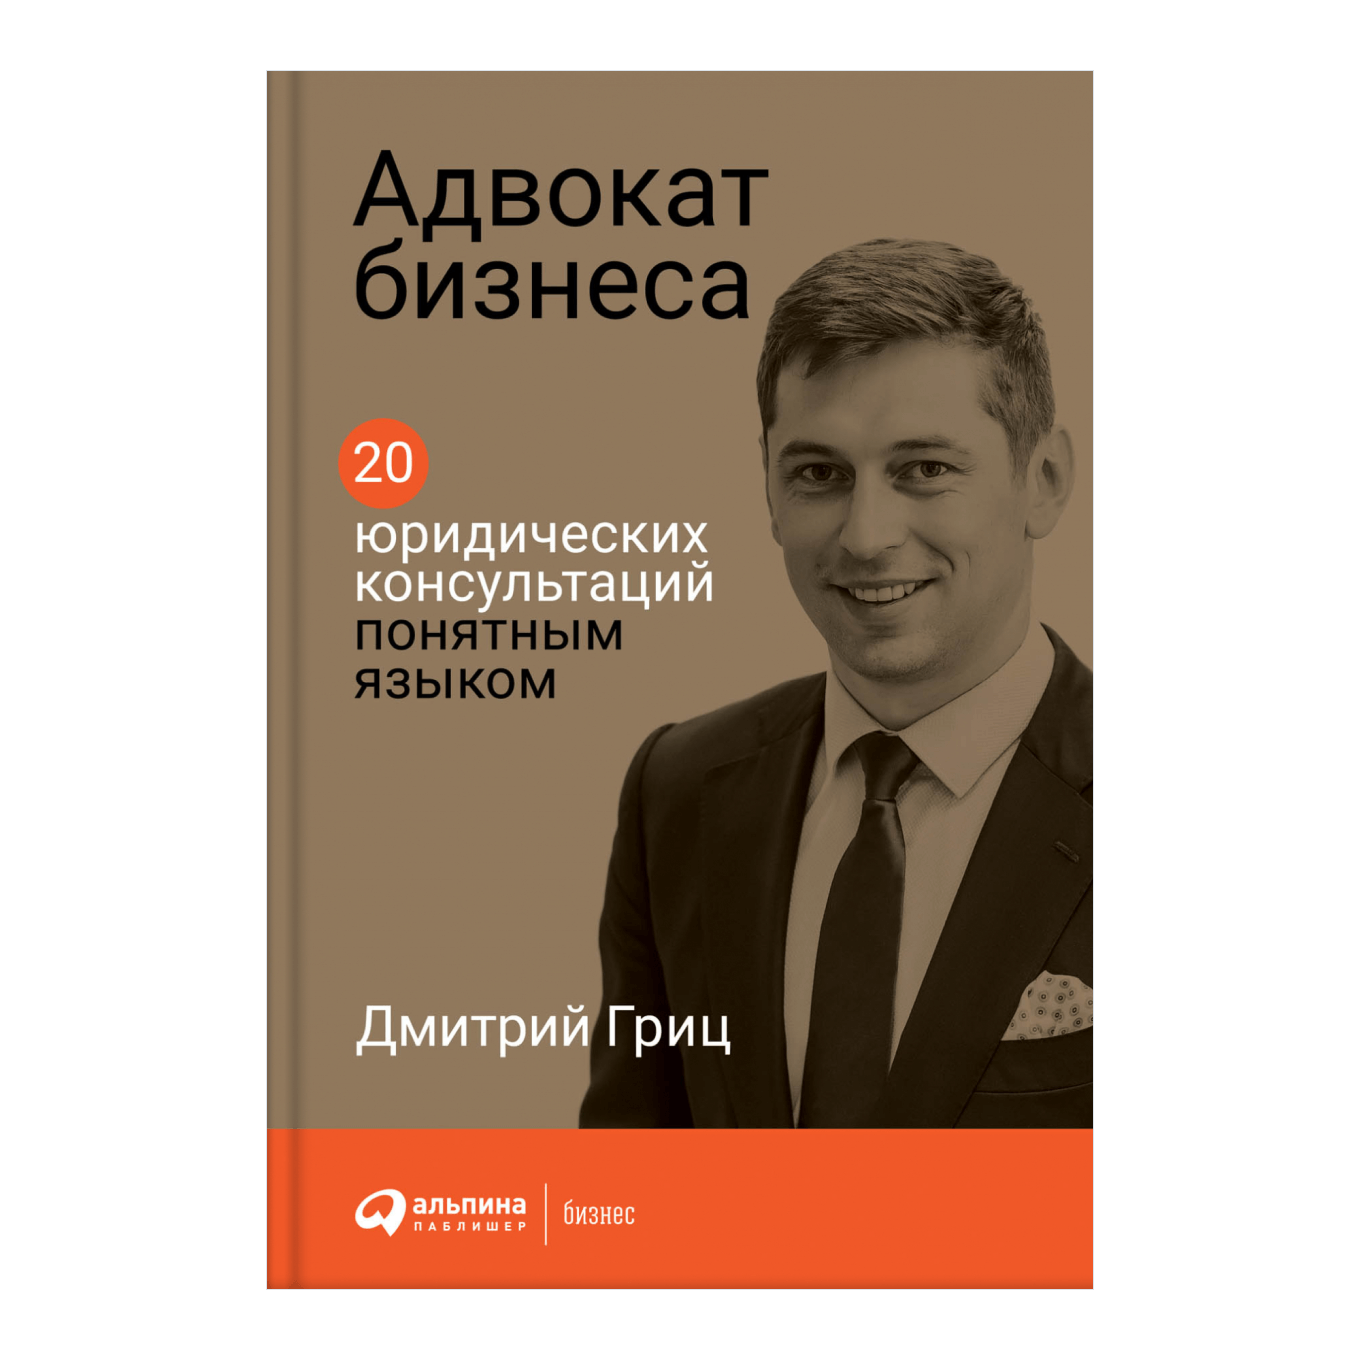 Книга Дмитрия Грица «Адвокат бизнеса»